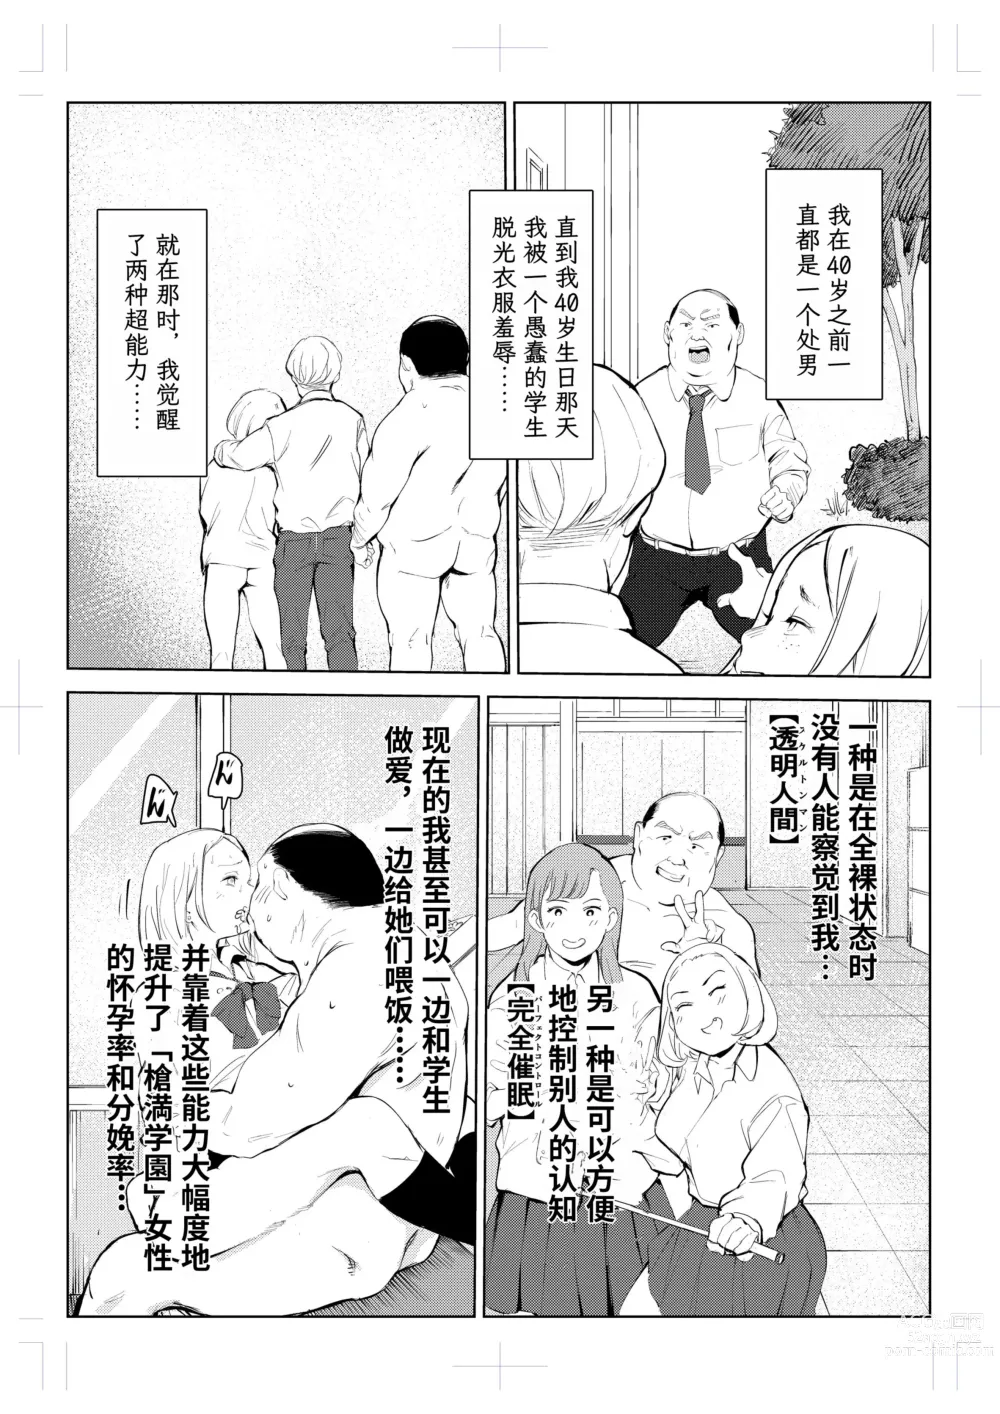 Page 4 of doujinshi 40-sai no Mahoutsukai 4